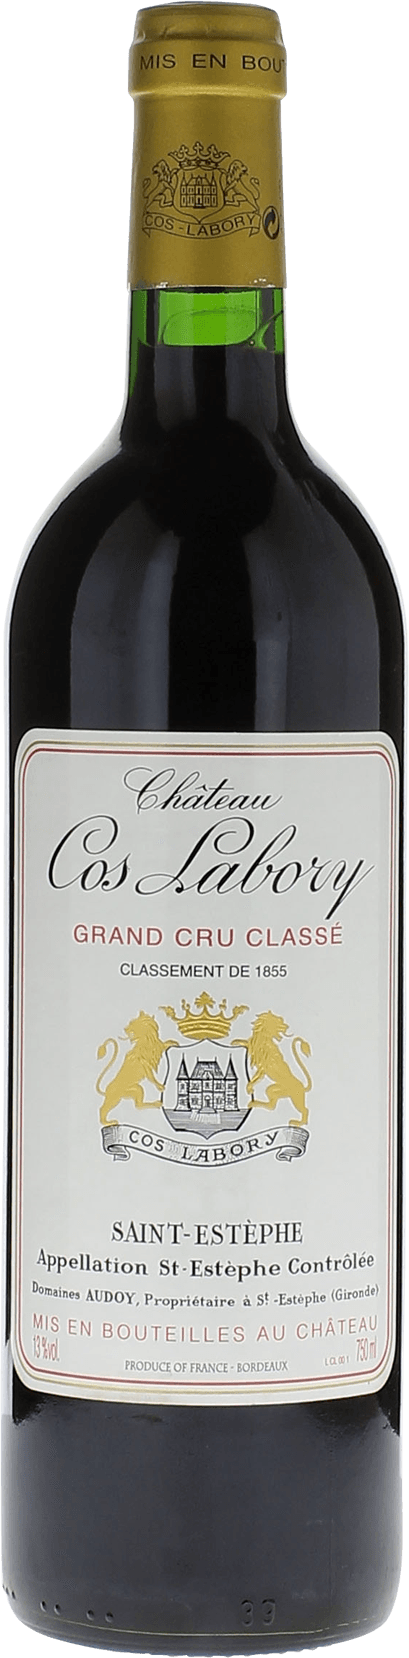 Cos labory 1990 5me Grand cru class Saint-Estphe, Bordeaux rouge